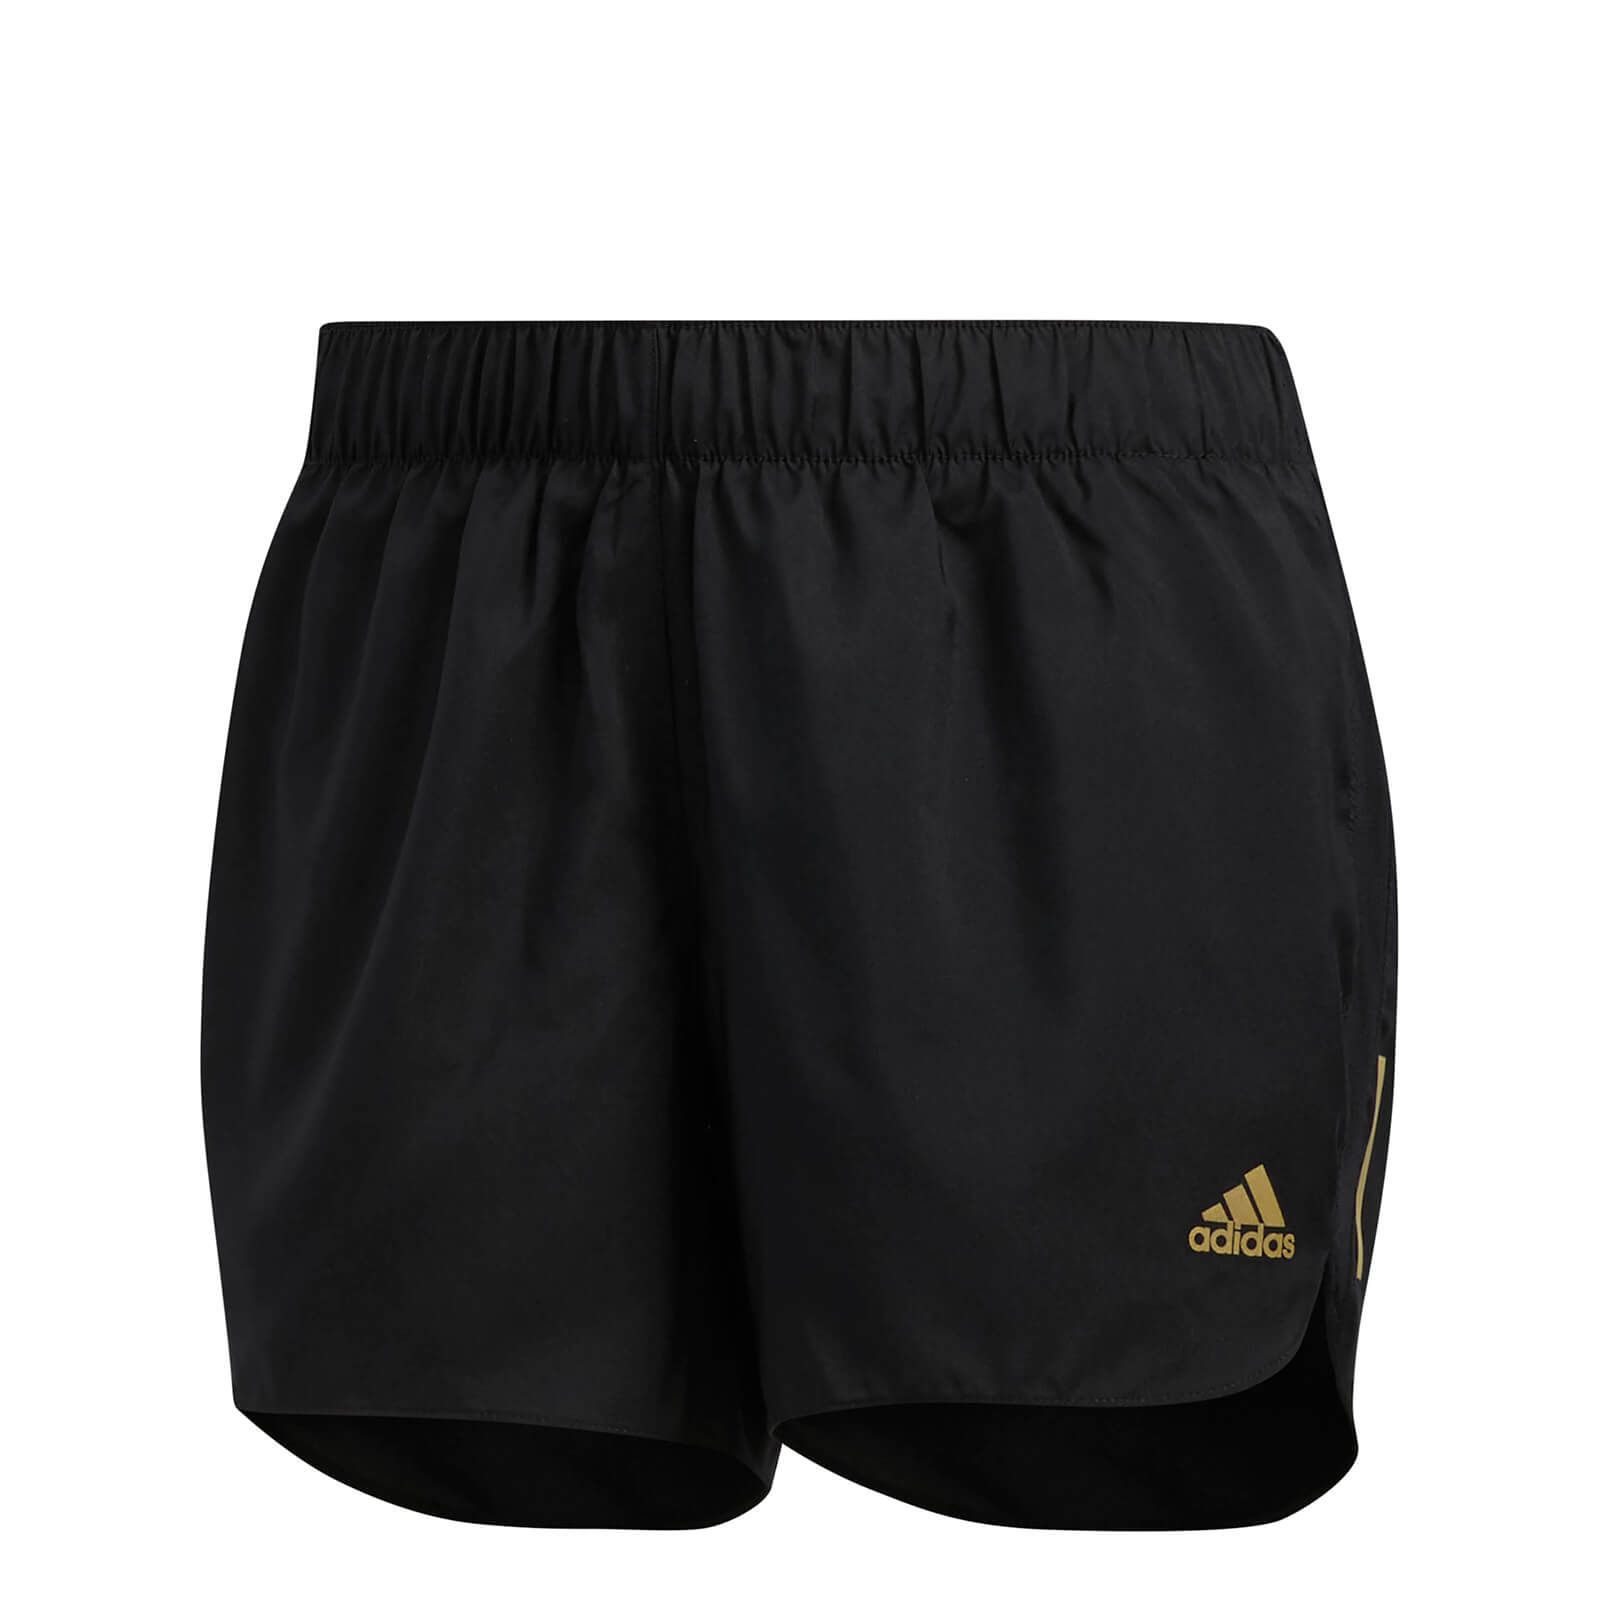 adidas black and gold shorts